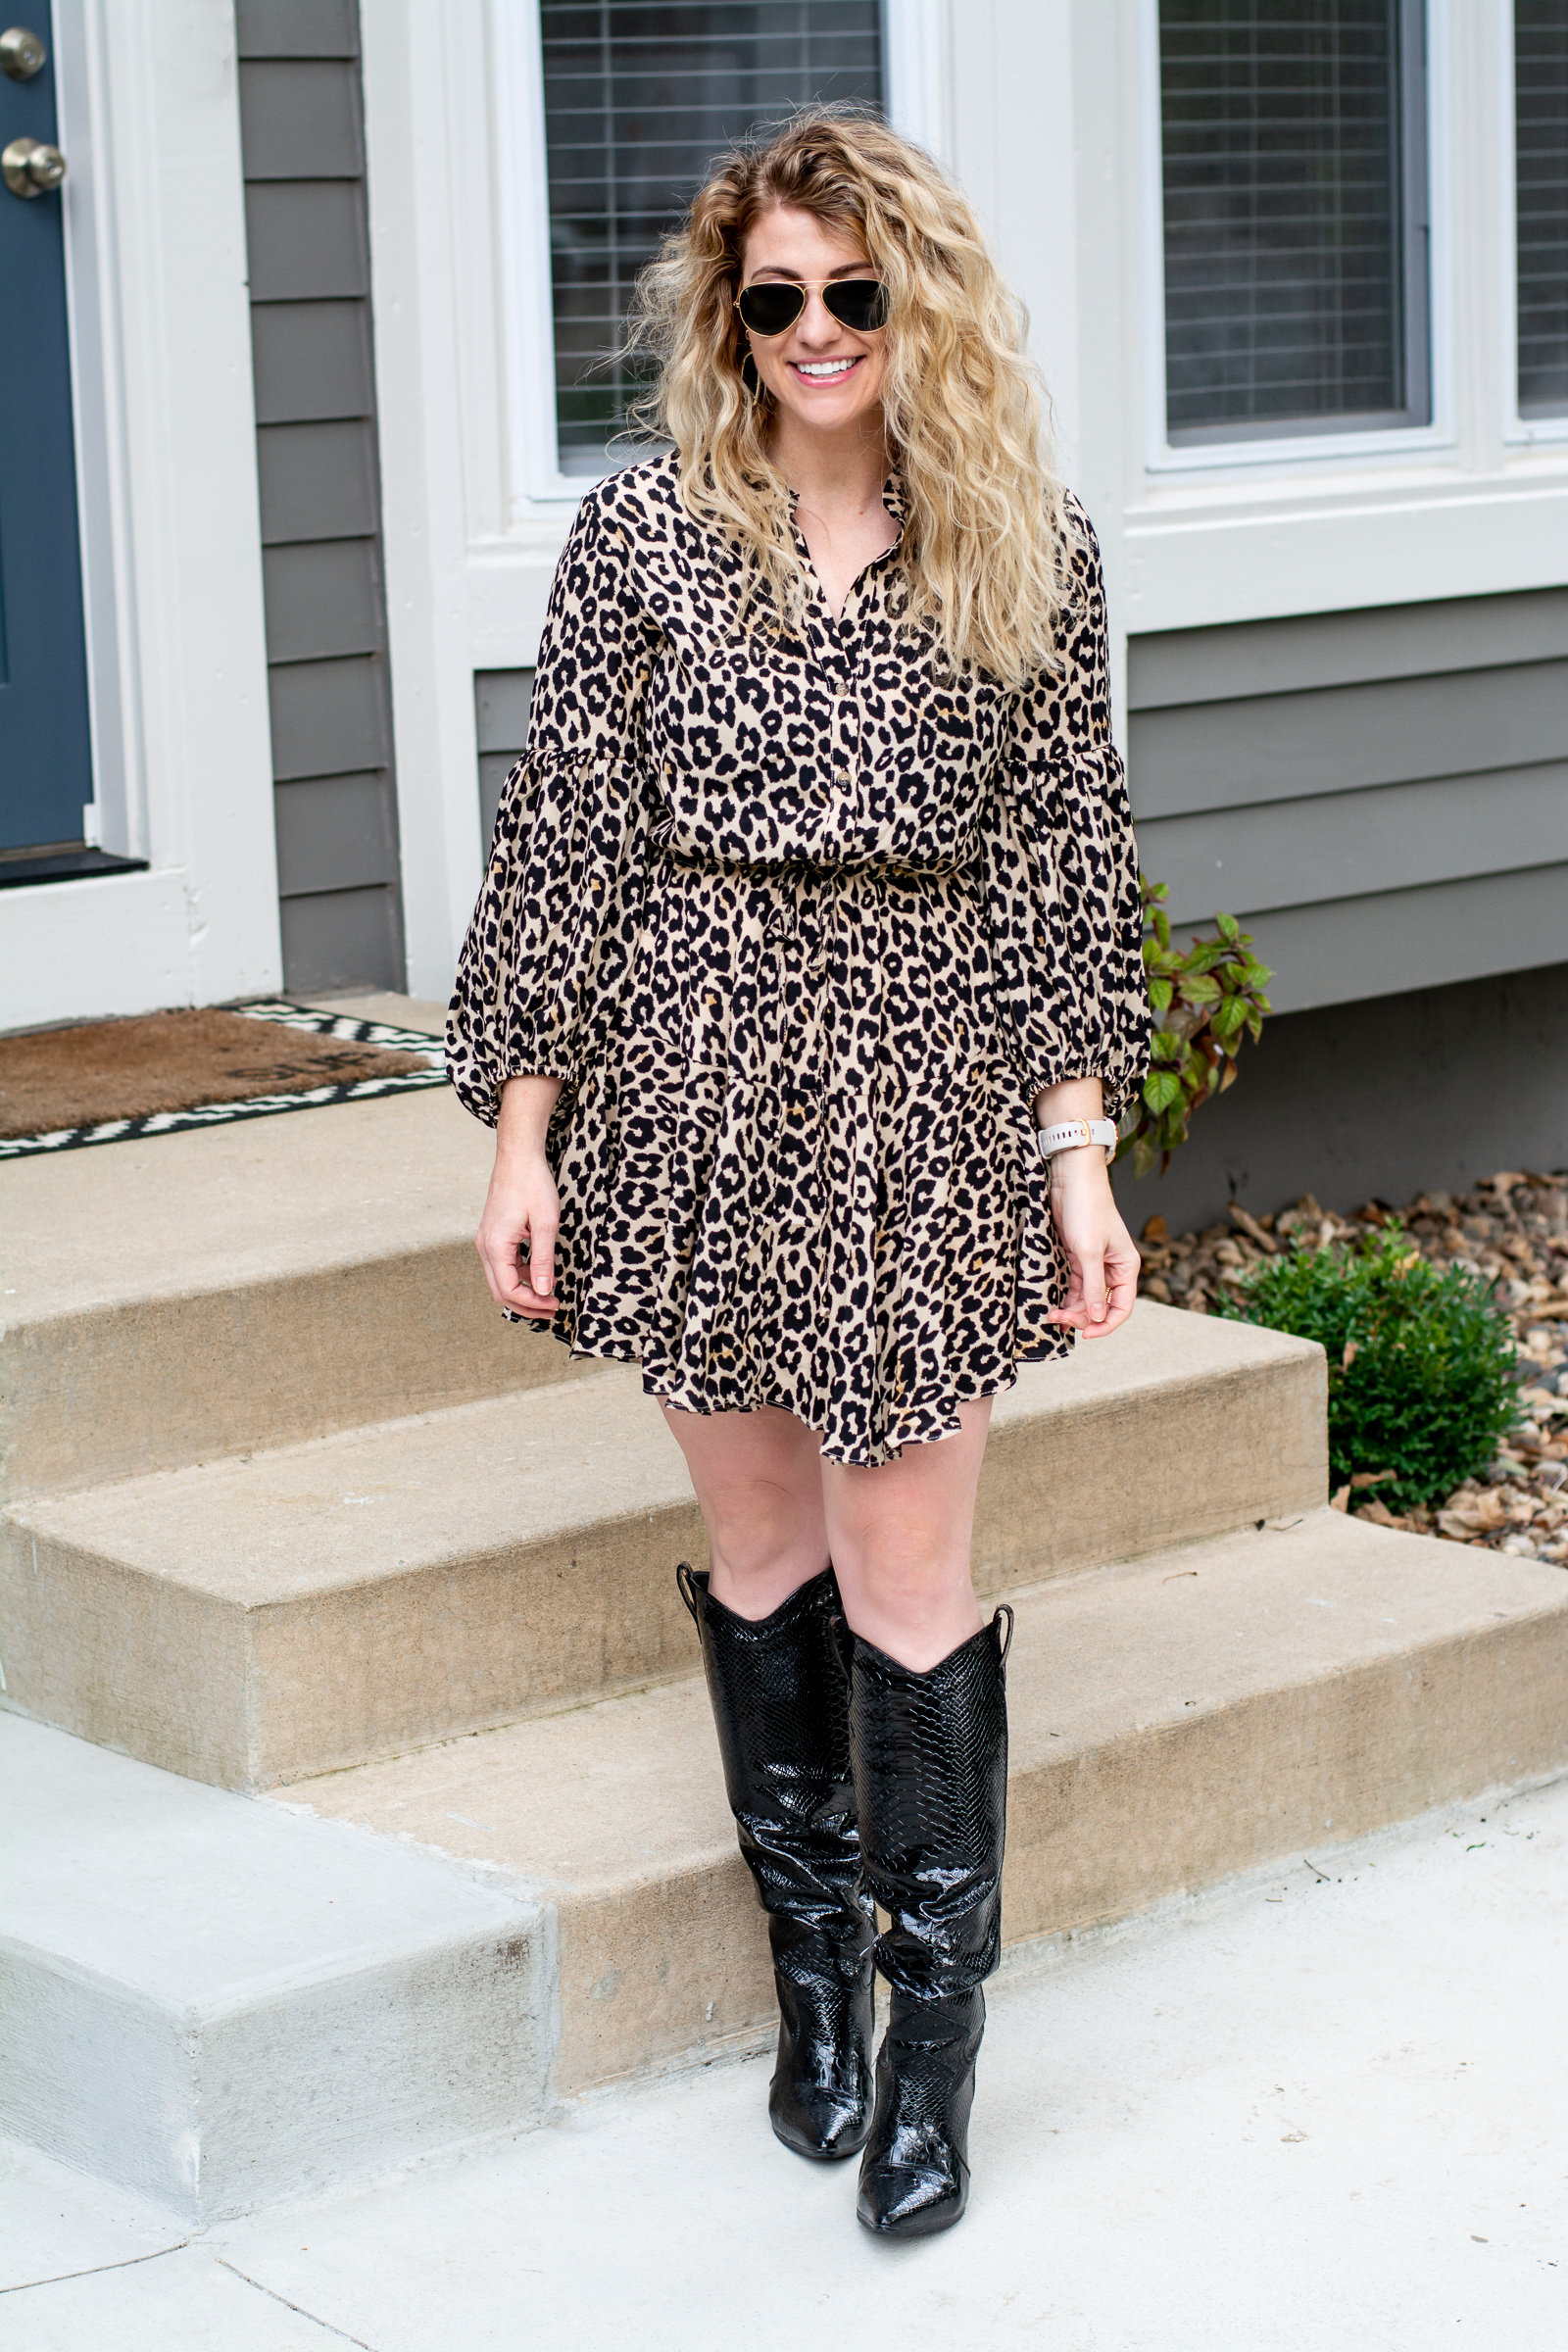 Wear Now: Leopard Dress + Patent Leather Cowboy Boots. | LSR